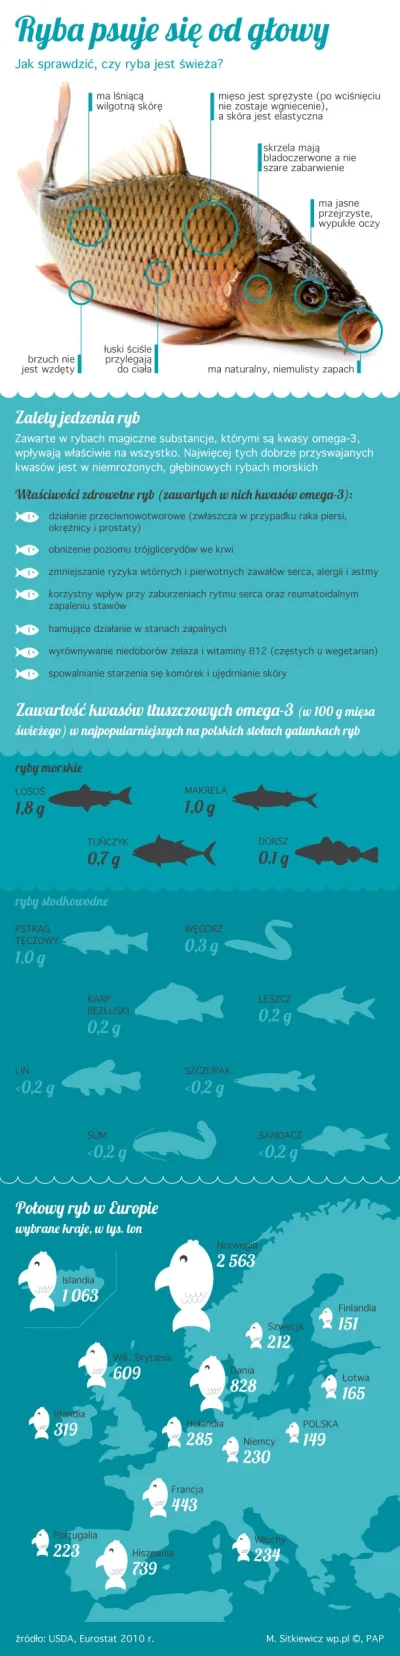 p.....2 - taka tam #infografika 
#baltyk #ryby #fanatycywedkarstwa #wedkarstwo #ciek...